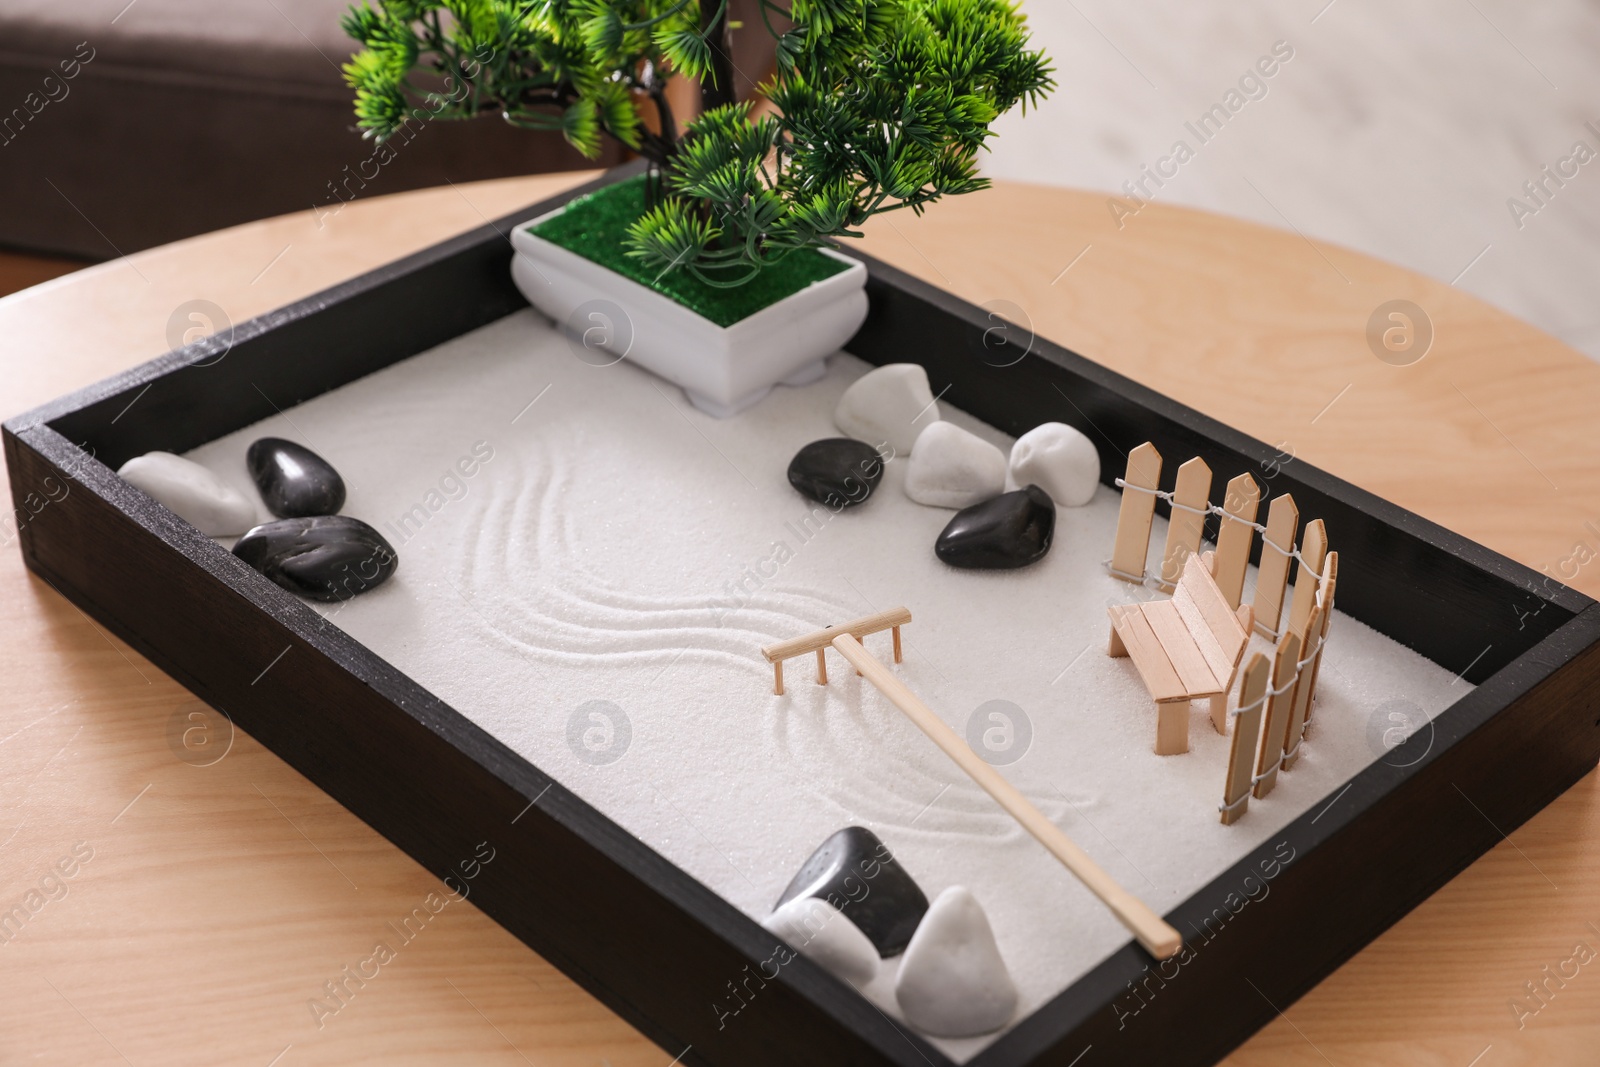 Photo of Beautiful miniature zen garden on wooden table